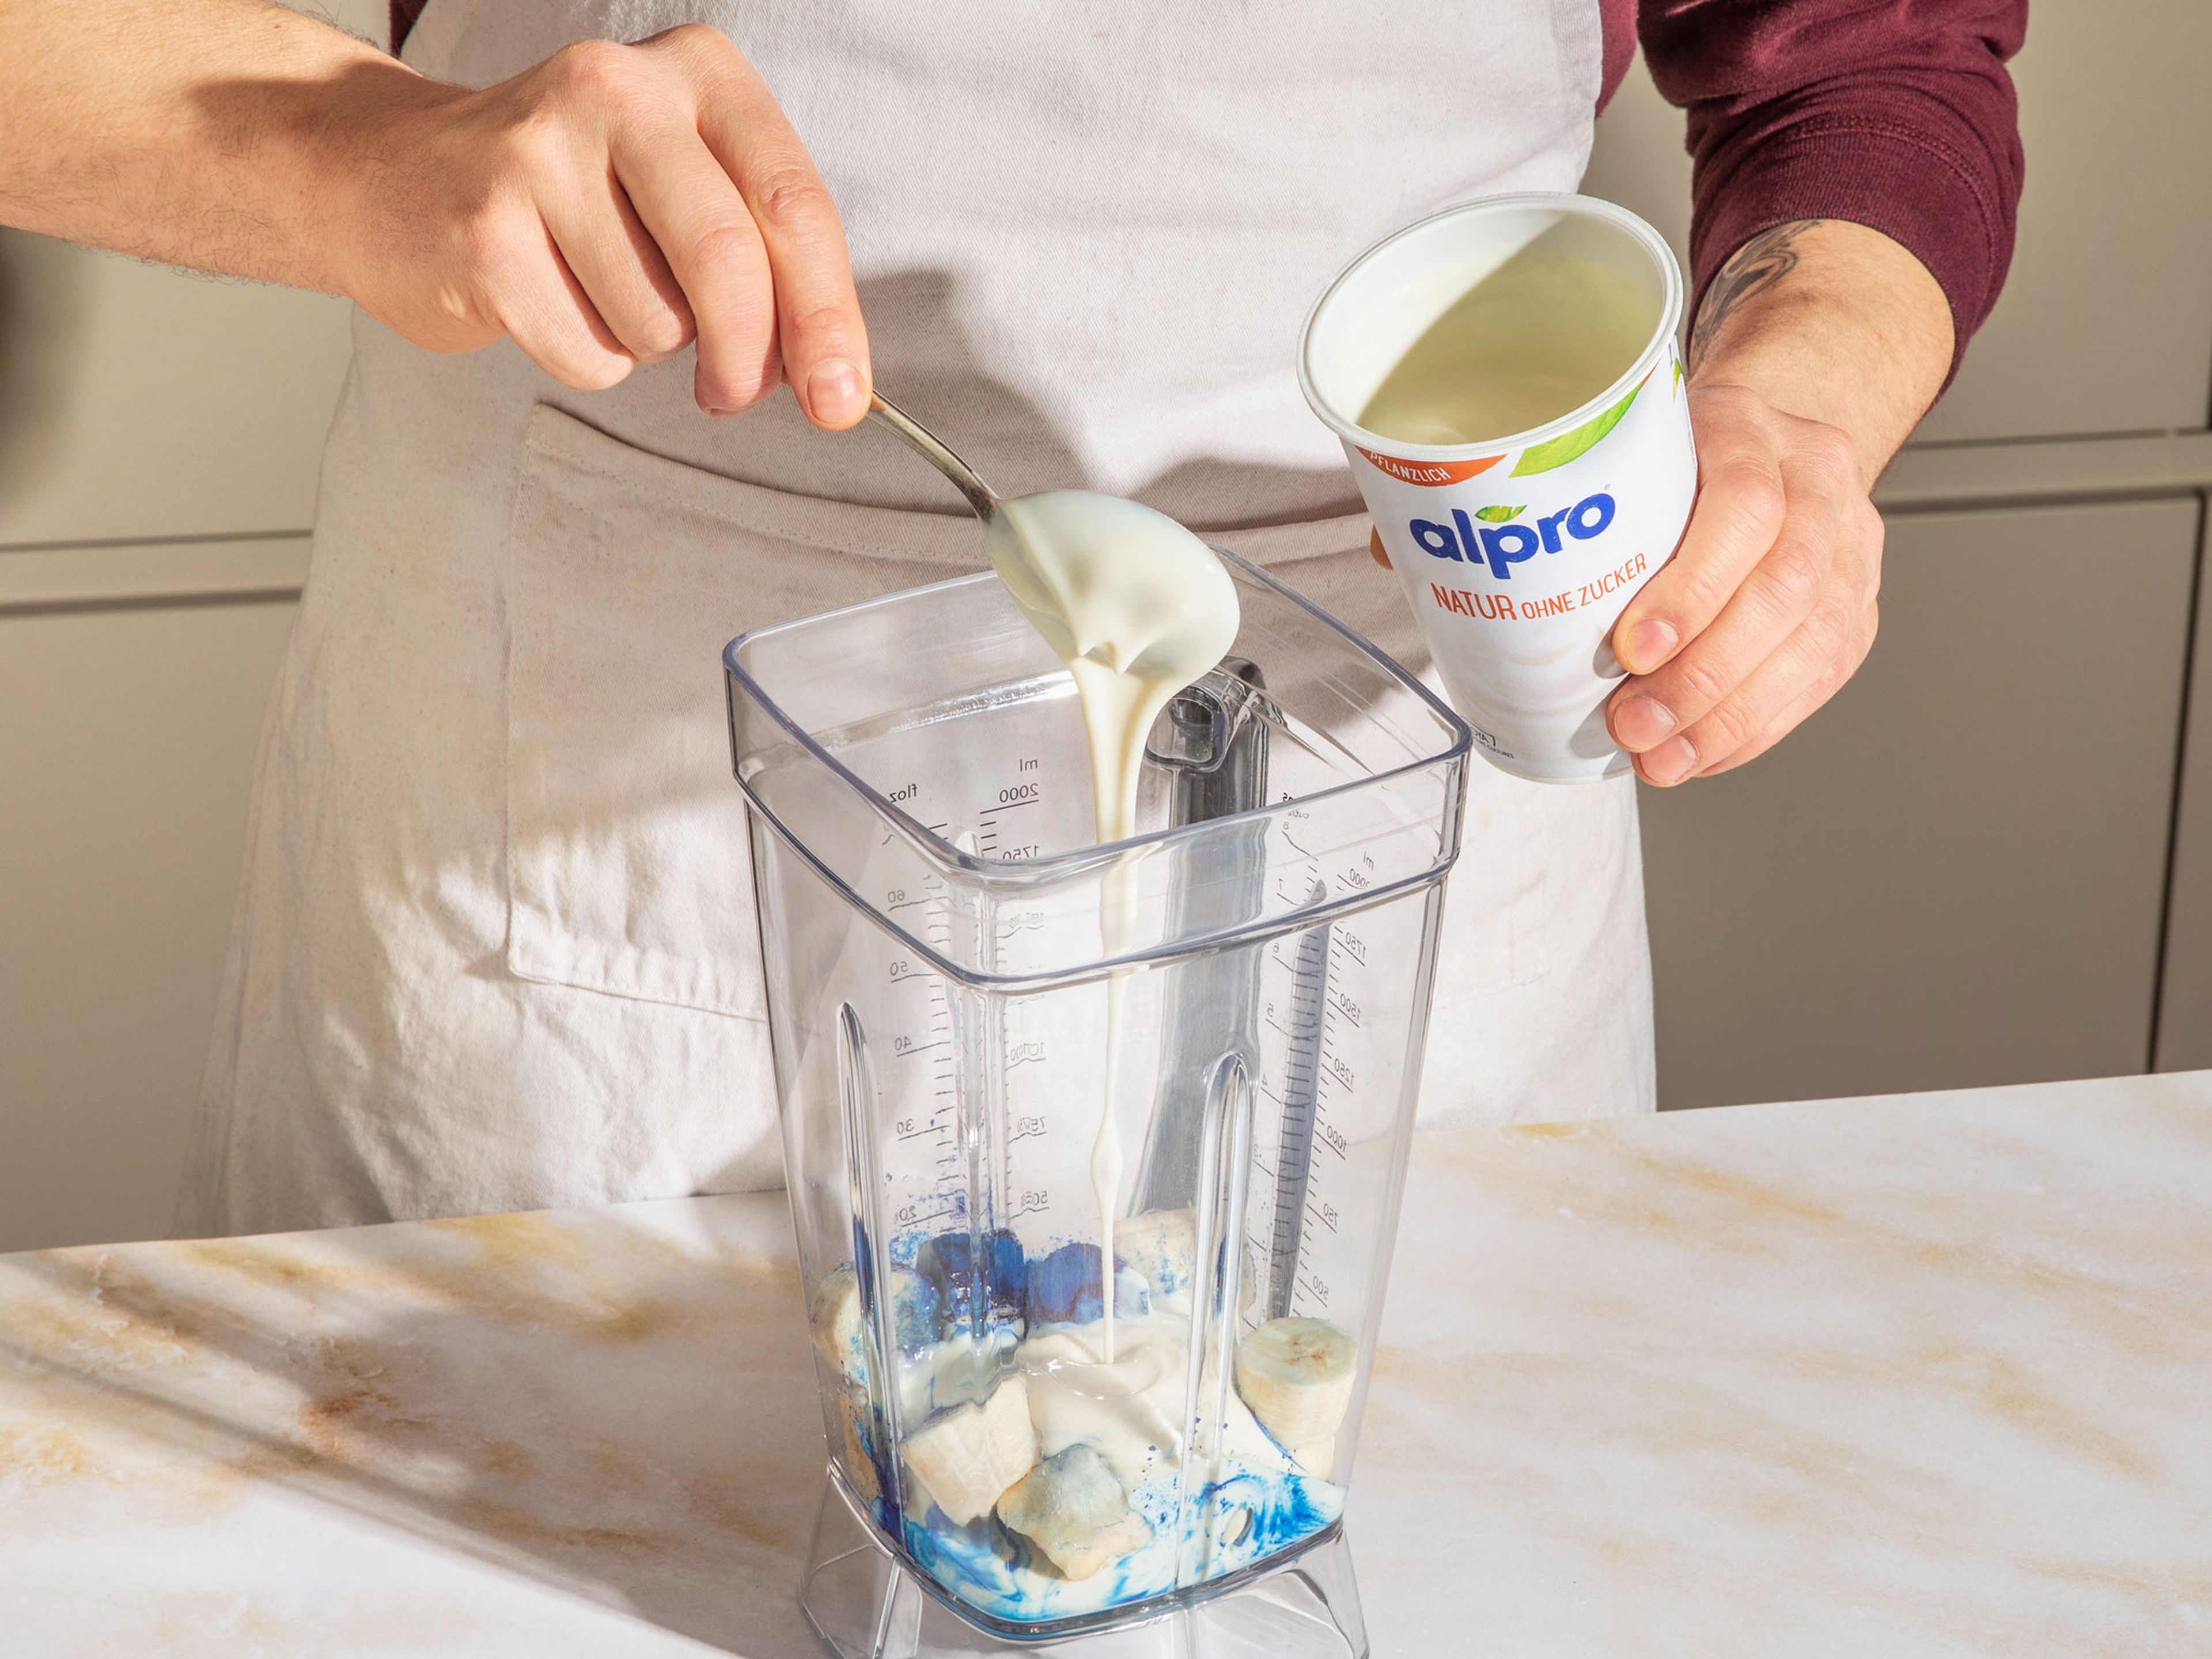 300 g Alpro Joghurtalternative Ohne Zucker in einen Mixer geben, die Bananenstücke, das Vanillemark und das Spirulina-Pulver dazugeben und alles mixen, bis eine blaue Creme entsteht. In Schalen oder tiefe Teller füllen.